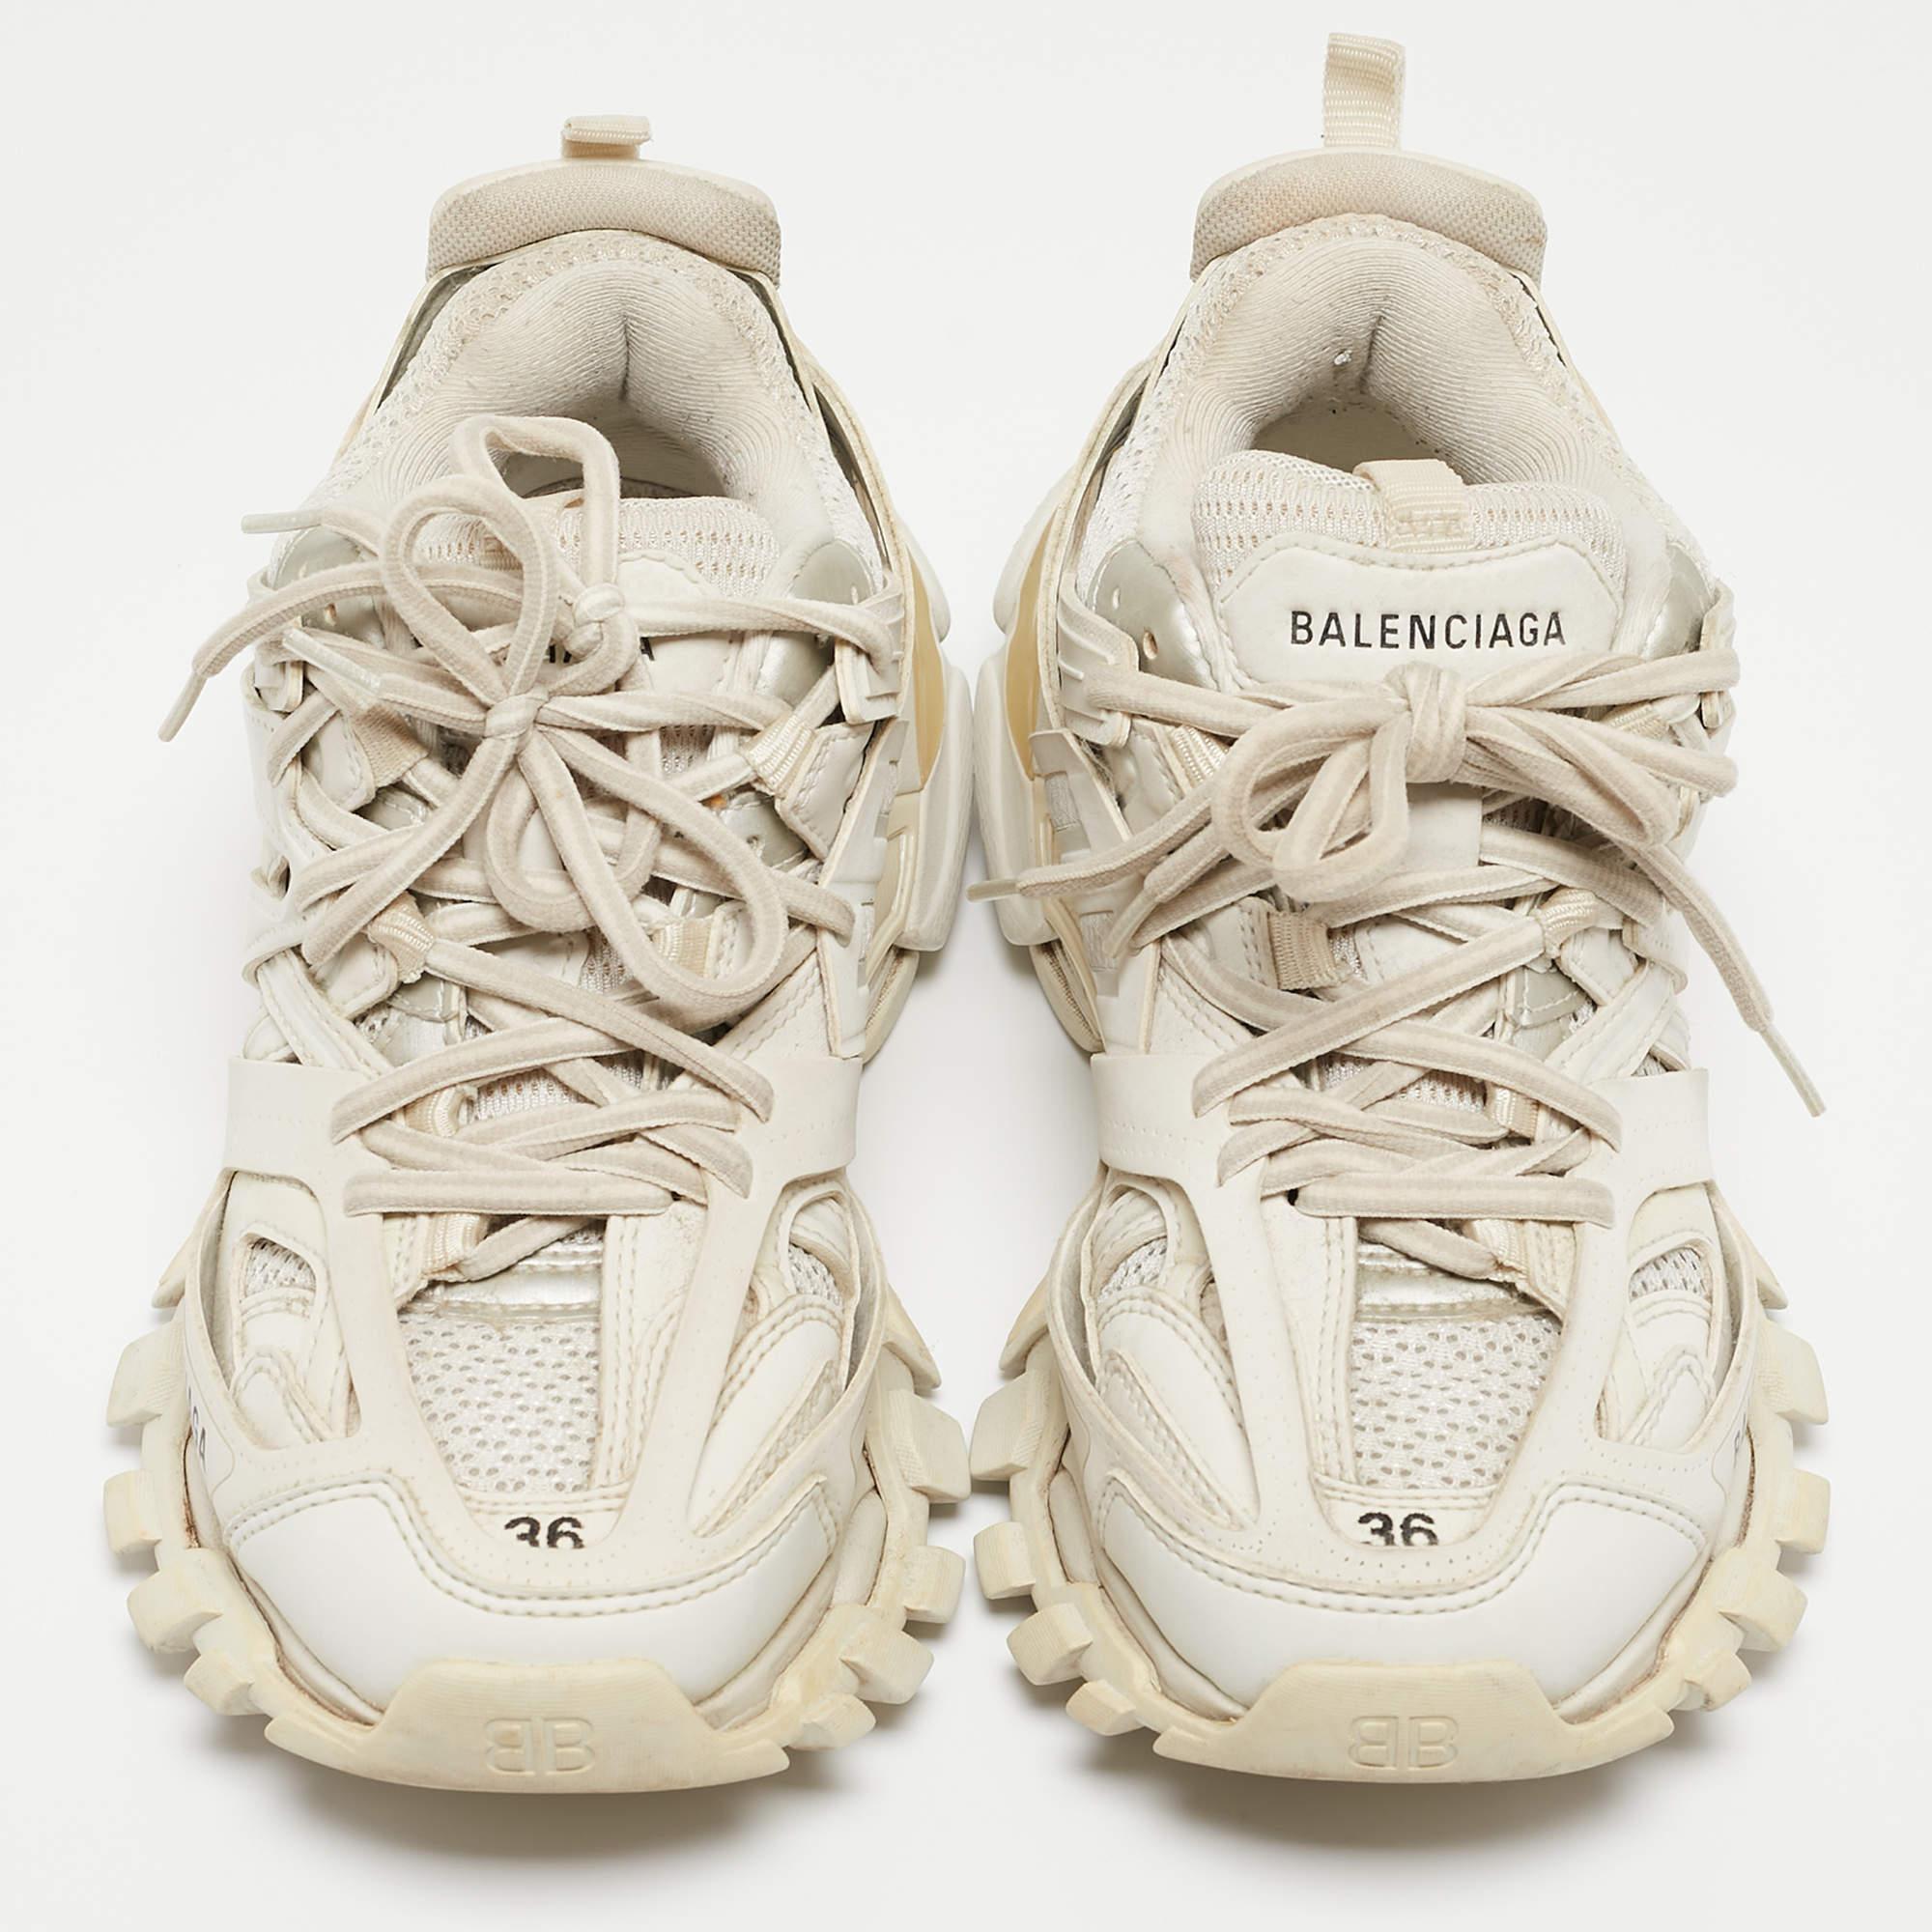 Balenciaga White Mesh and Leather Track Sneakers Size 36 In Fair Condition For Sale In Dubai, Al Qouz 2